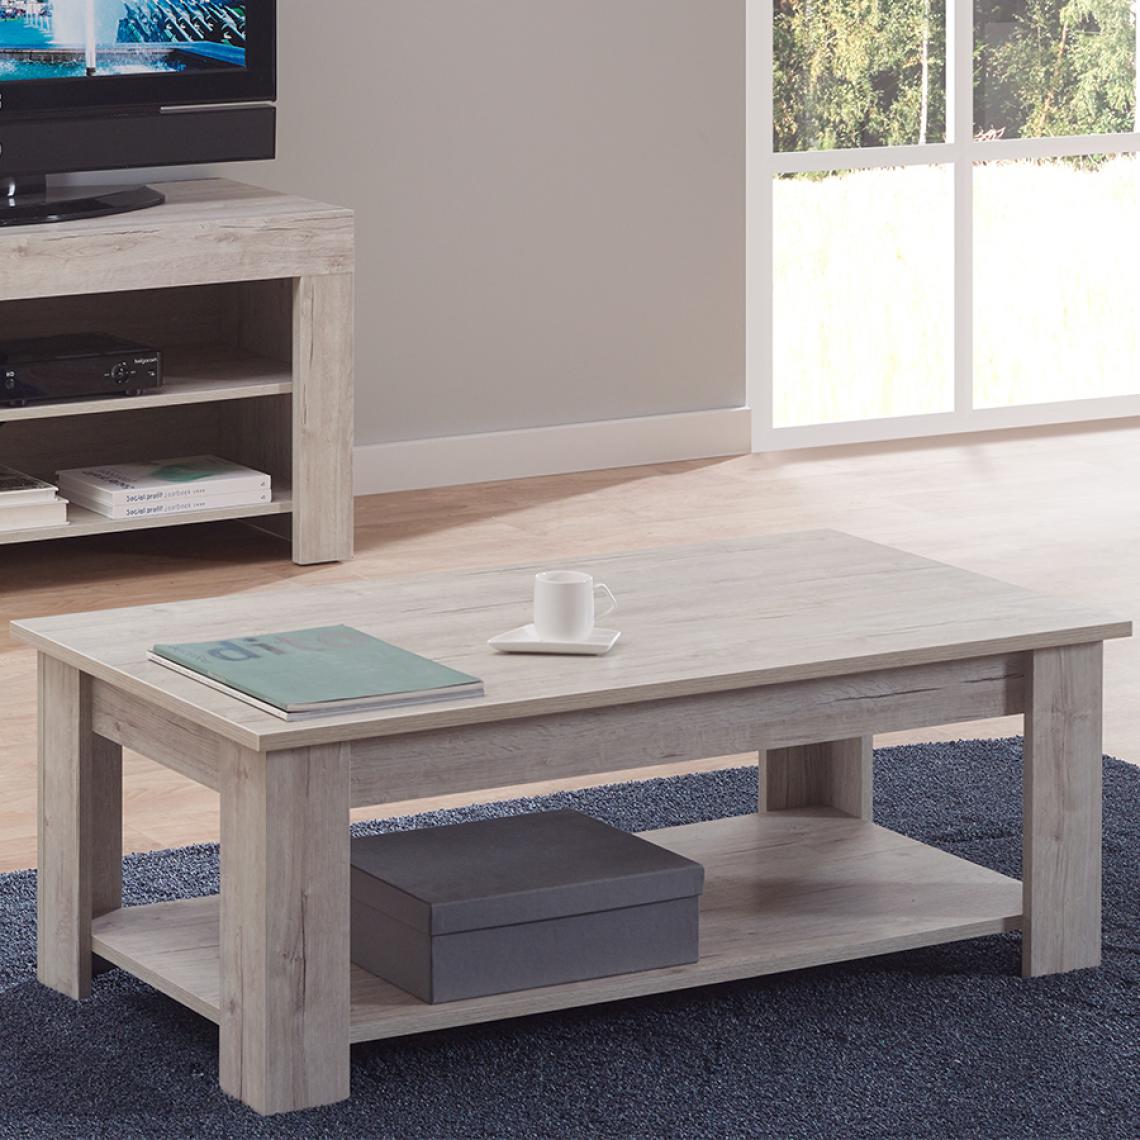 Nouvomeuble - Table basse contemporaine couleur bois clair GIOVANNI - Tables basses